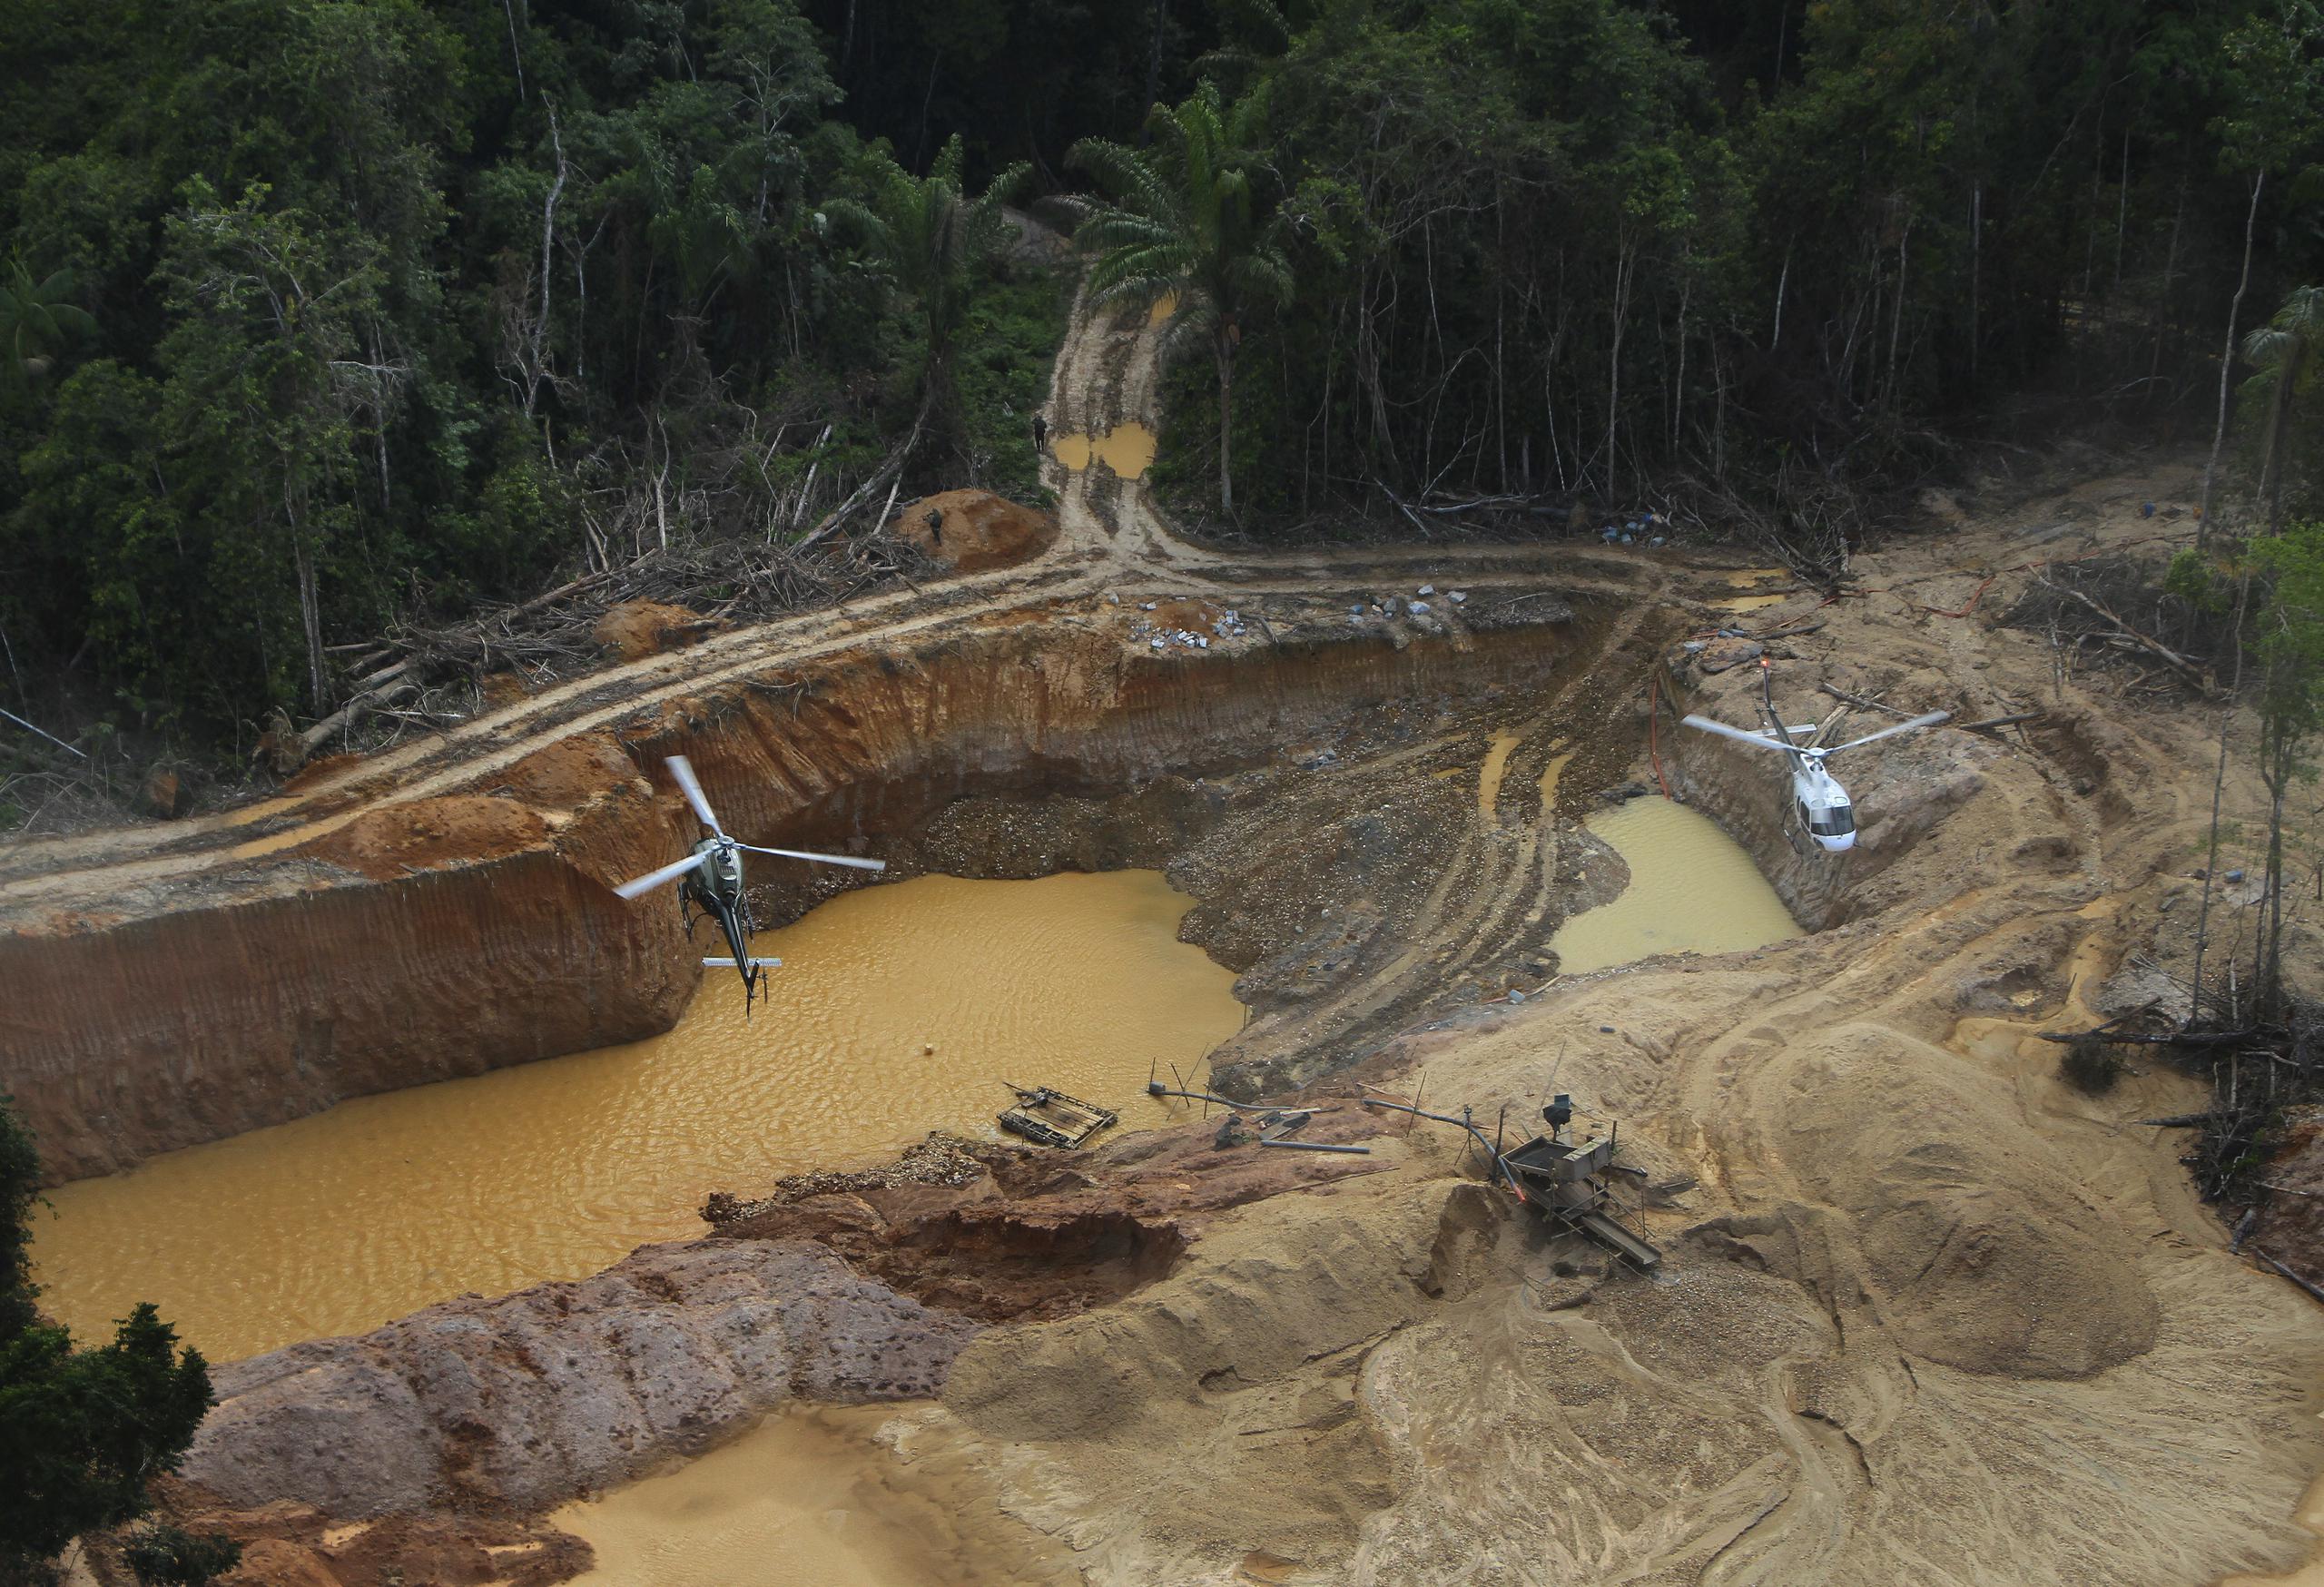 El venenoso mercurio se usa comúnmente en la minería ilegal -muy generalizada en Brasil- para procesar el oro.